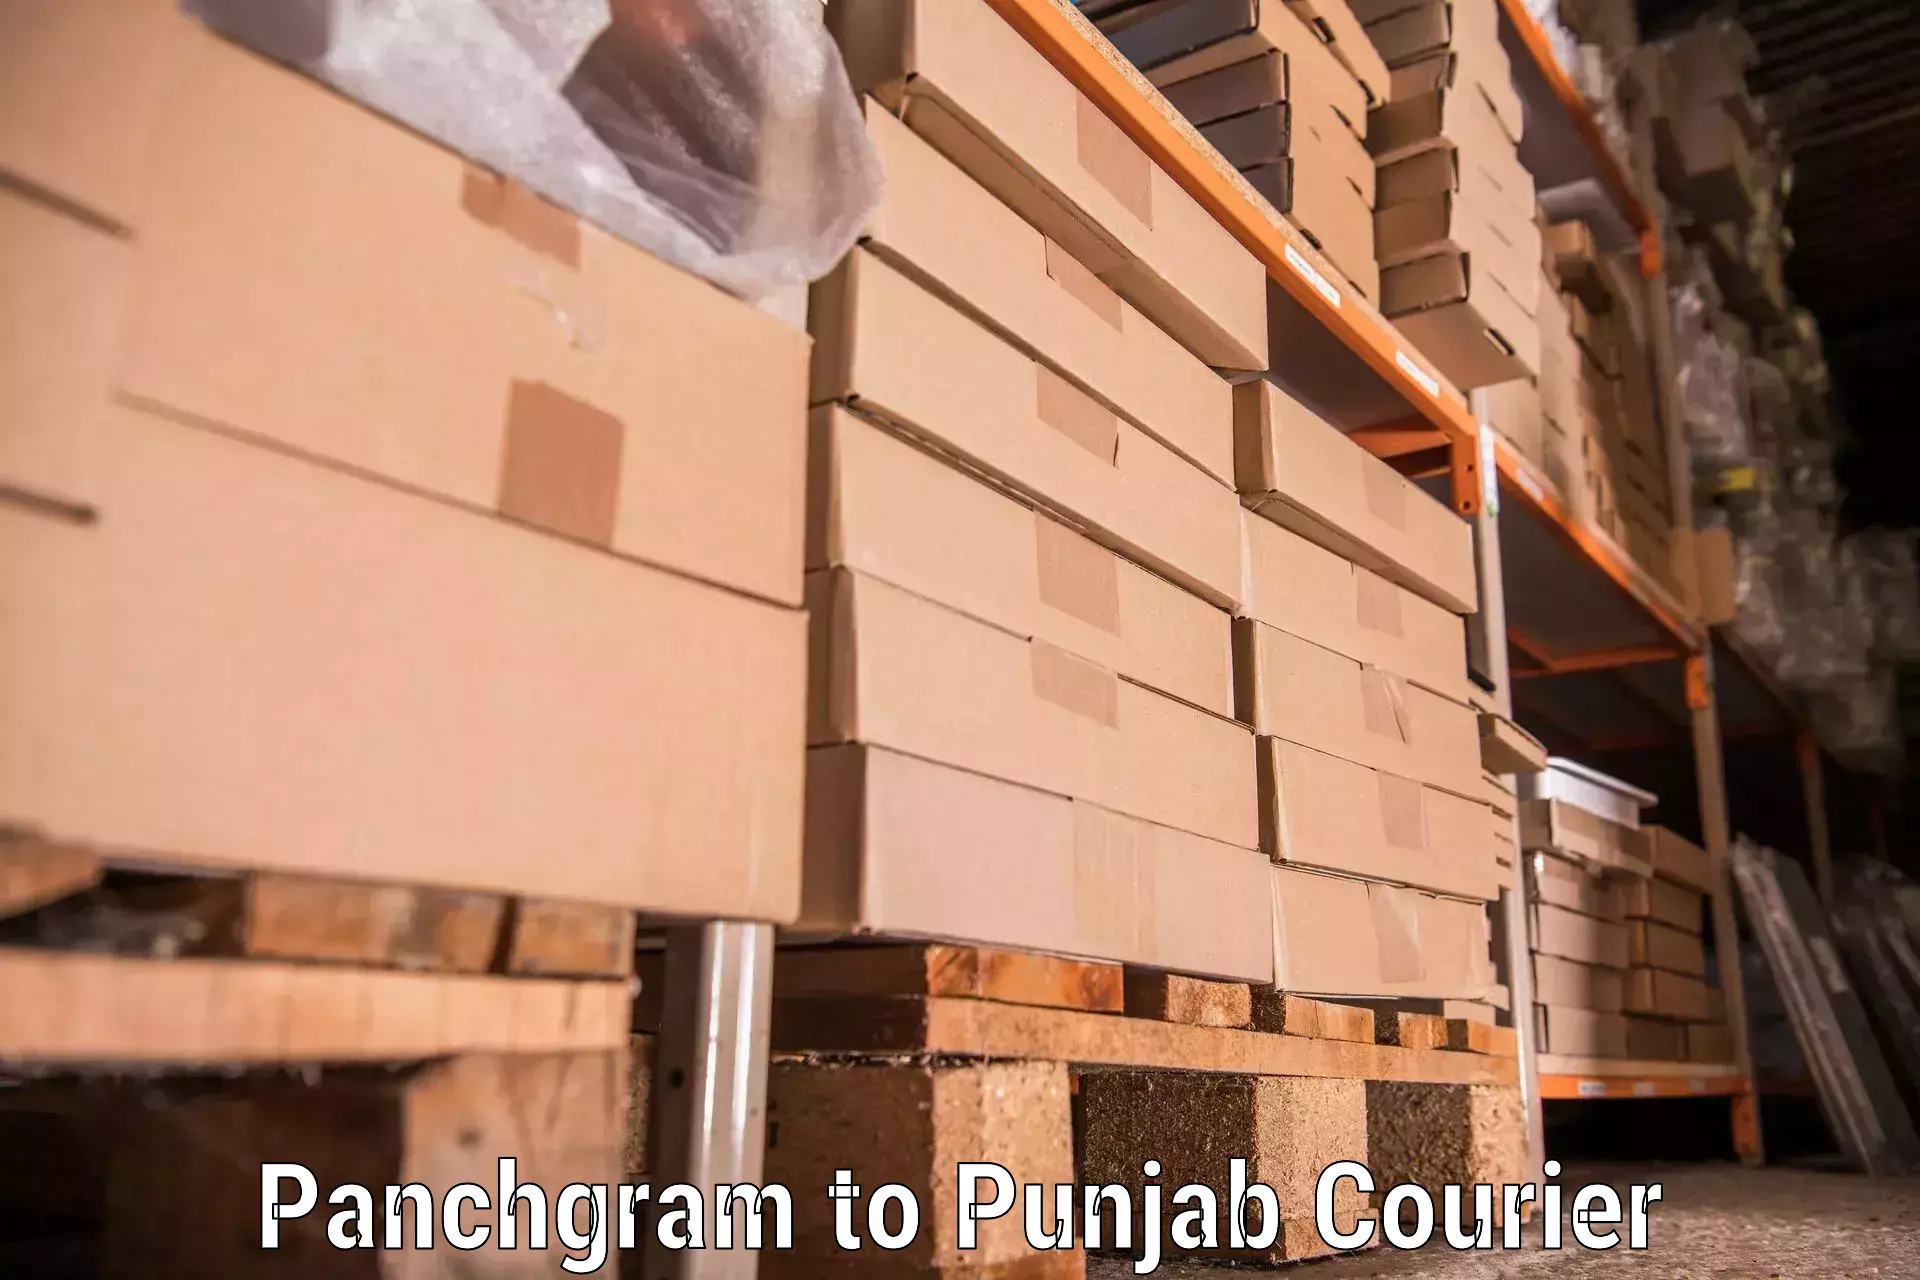 Personalized furniture moving Panchgram to Punjab